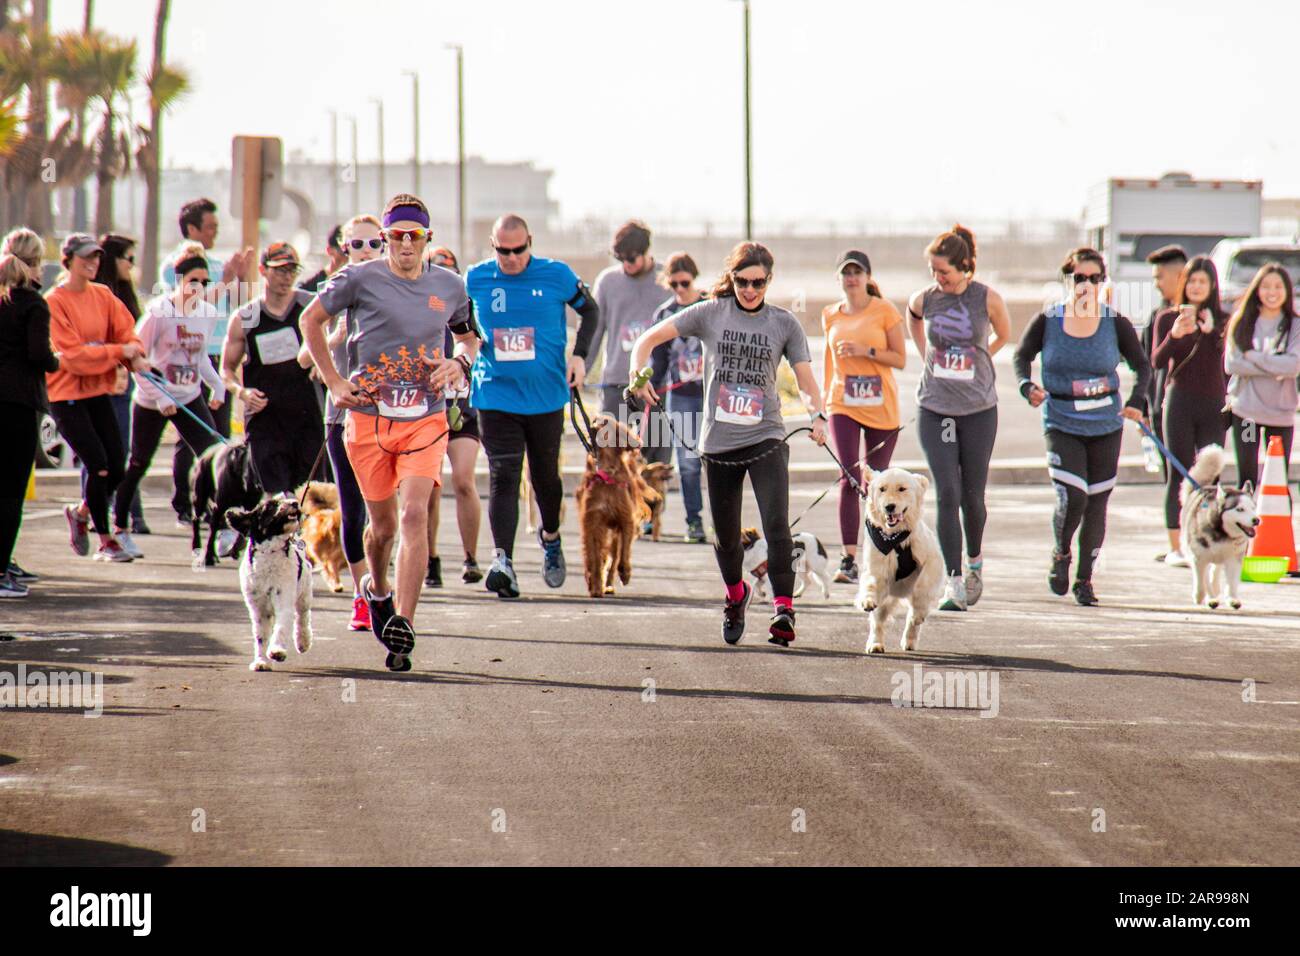 Die begeisterten Hundebesitzer, die ihre Haustiere an Leinen halten, verlassen die Startlinie eines 10.000-km-Rennens "Doggie Dash" auf einem Weg am Meer in Huntington Beach, CA. Stockfoto